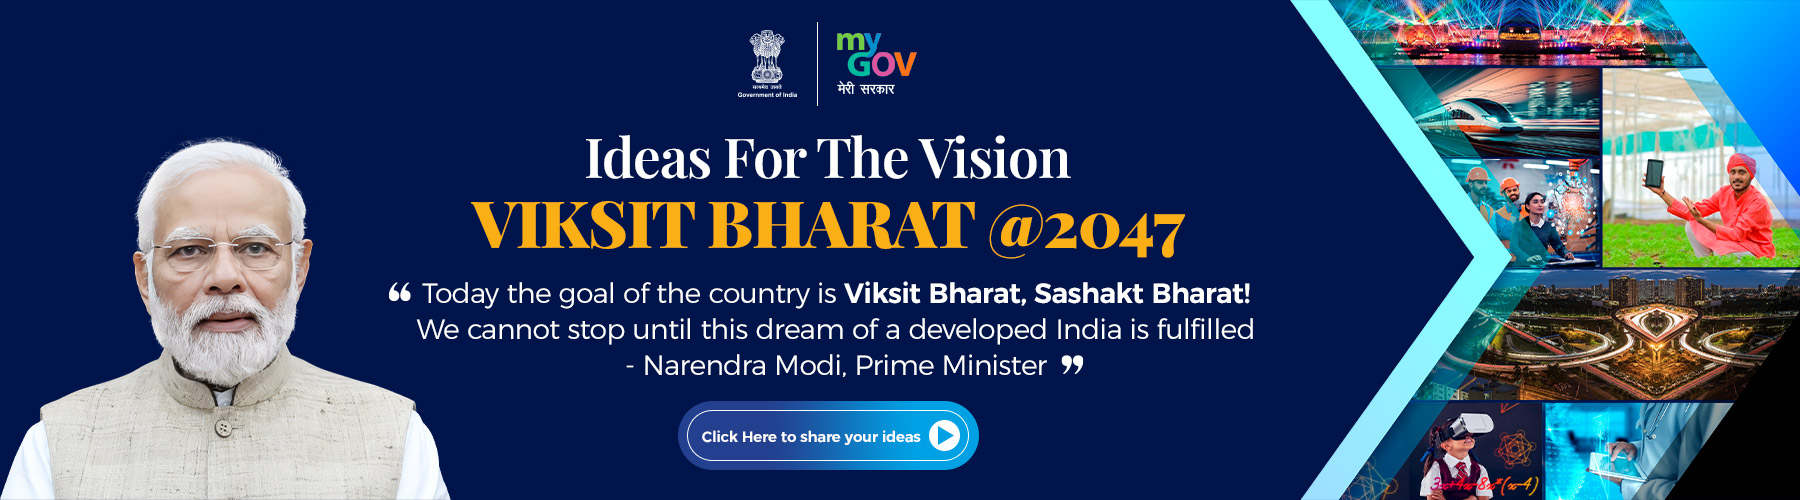 विकसित भारत@2047 विज़न के लिए विचार